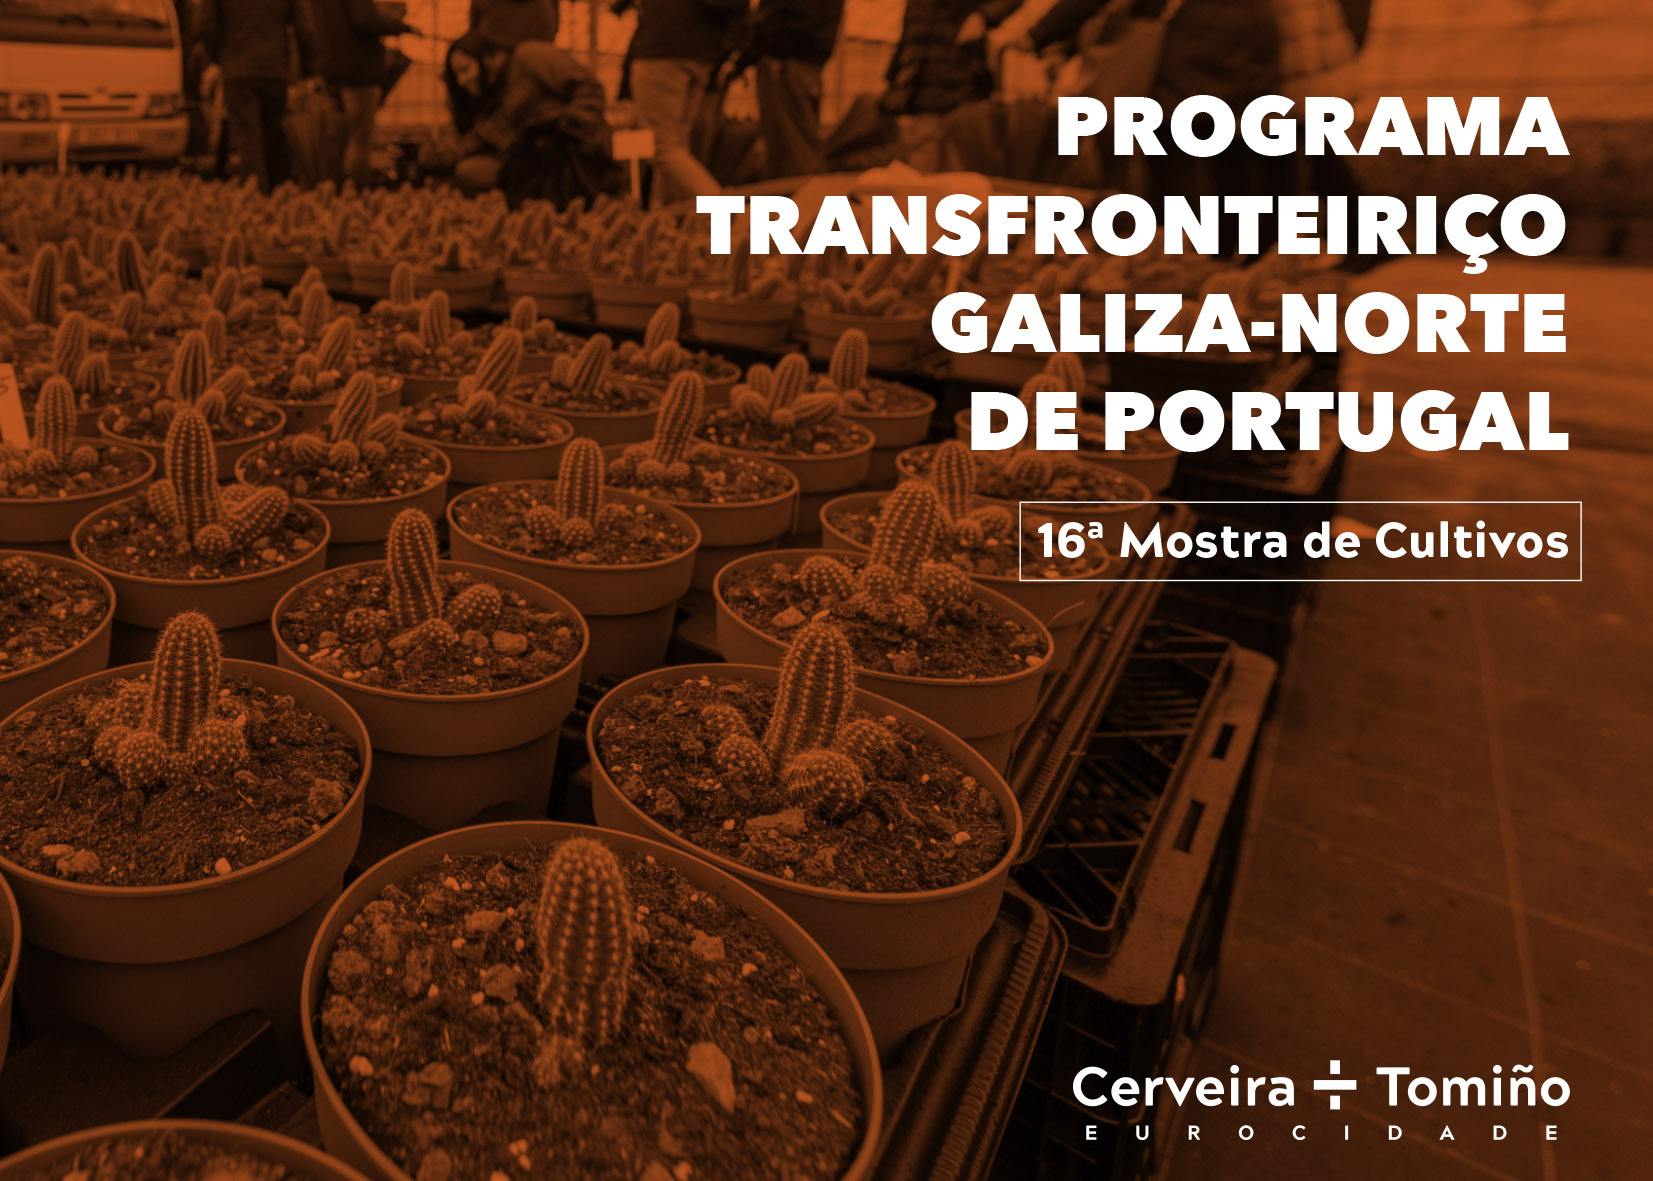 Programa Transfronteiriço Galiza-Norte de Portugal